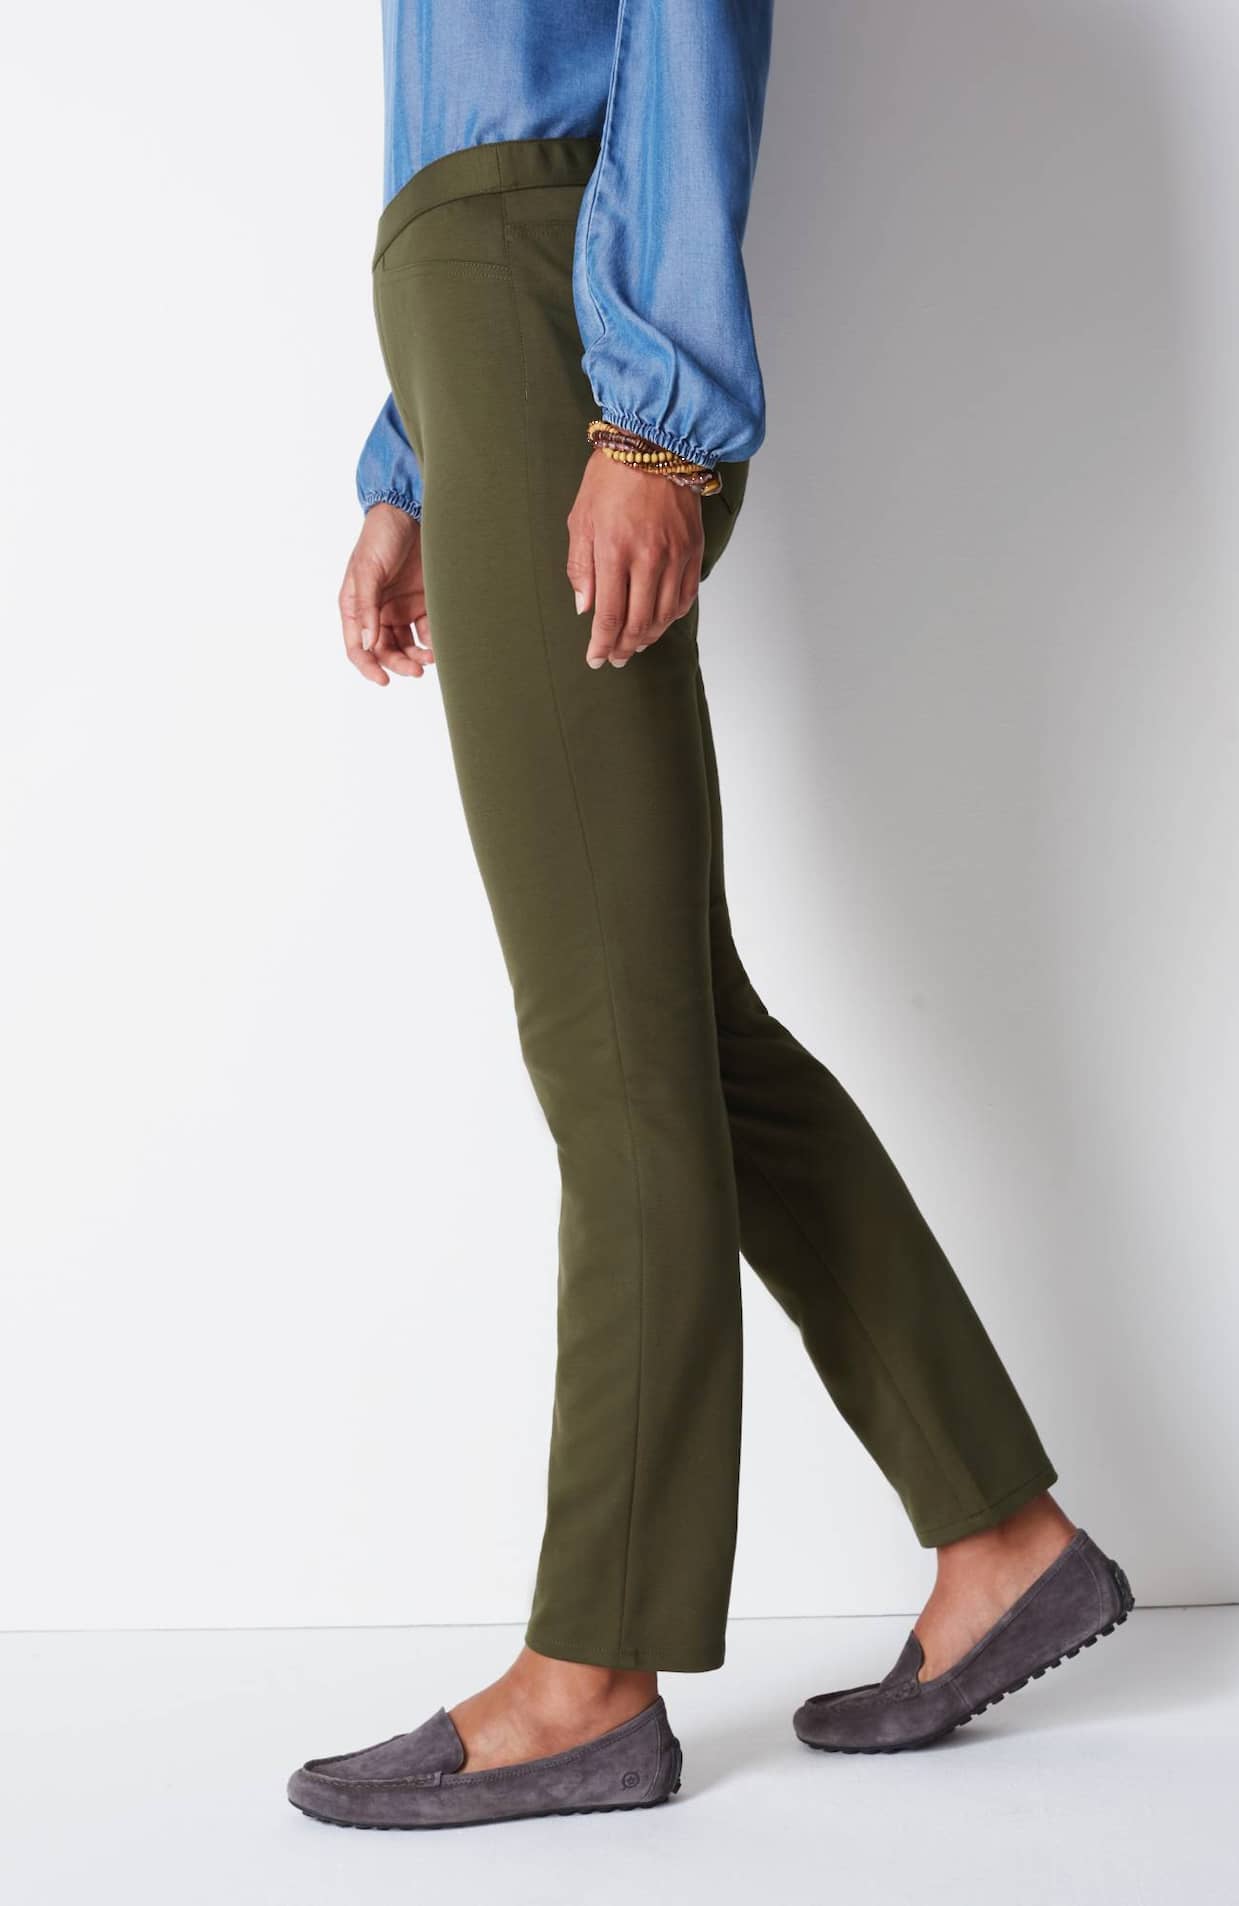 J Jill Pants Ponte Slim Leg Charcoal Gray Heather Ponte Knit Pants Size  Medium M